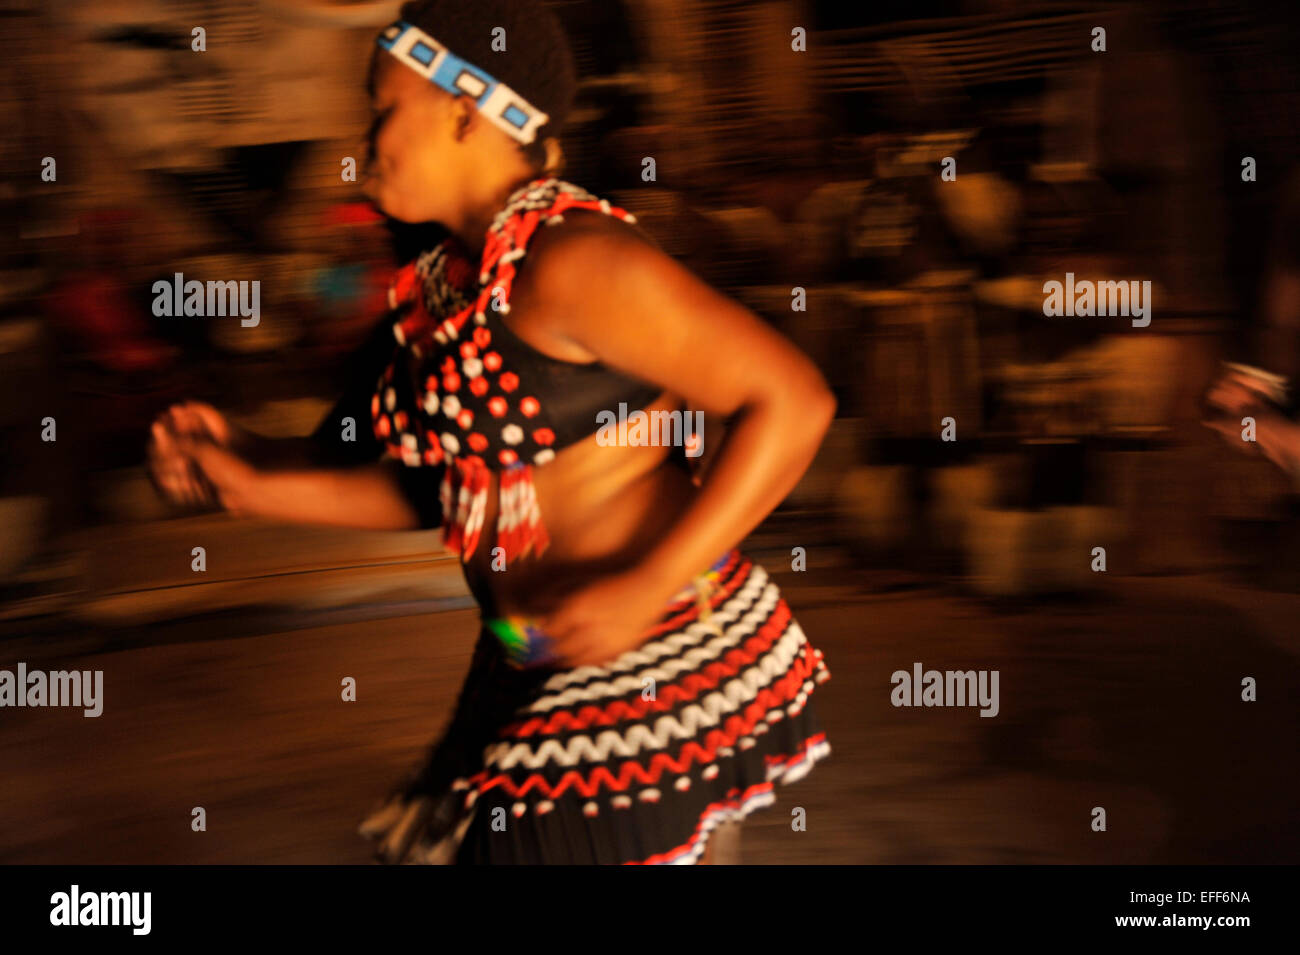 Personnes, femme adulte, culture, ethnique, KwaZulu-Natal, Afrique du Sud, motion blur, danseuse Zulu, danse traditionnelle, village à thème Shakaland, action Banque D'Images